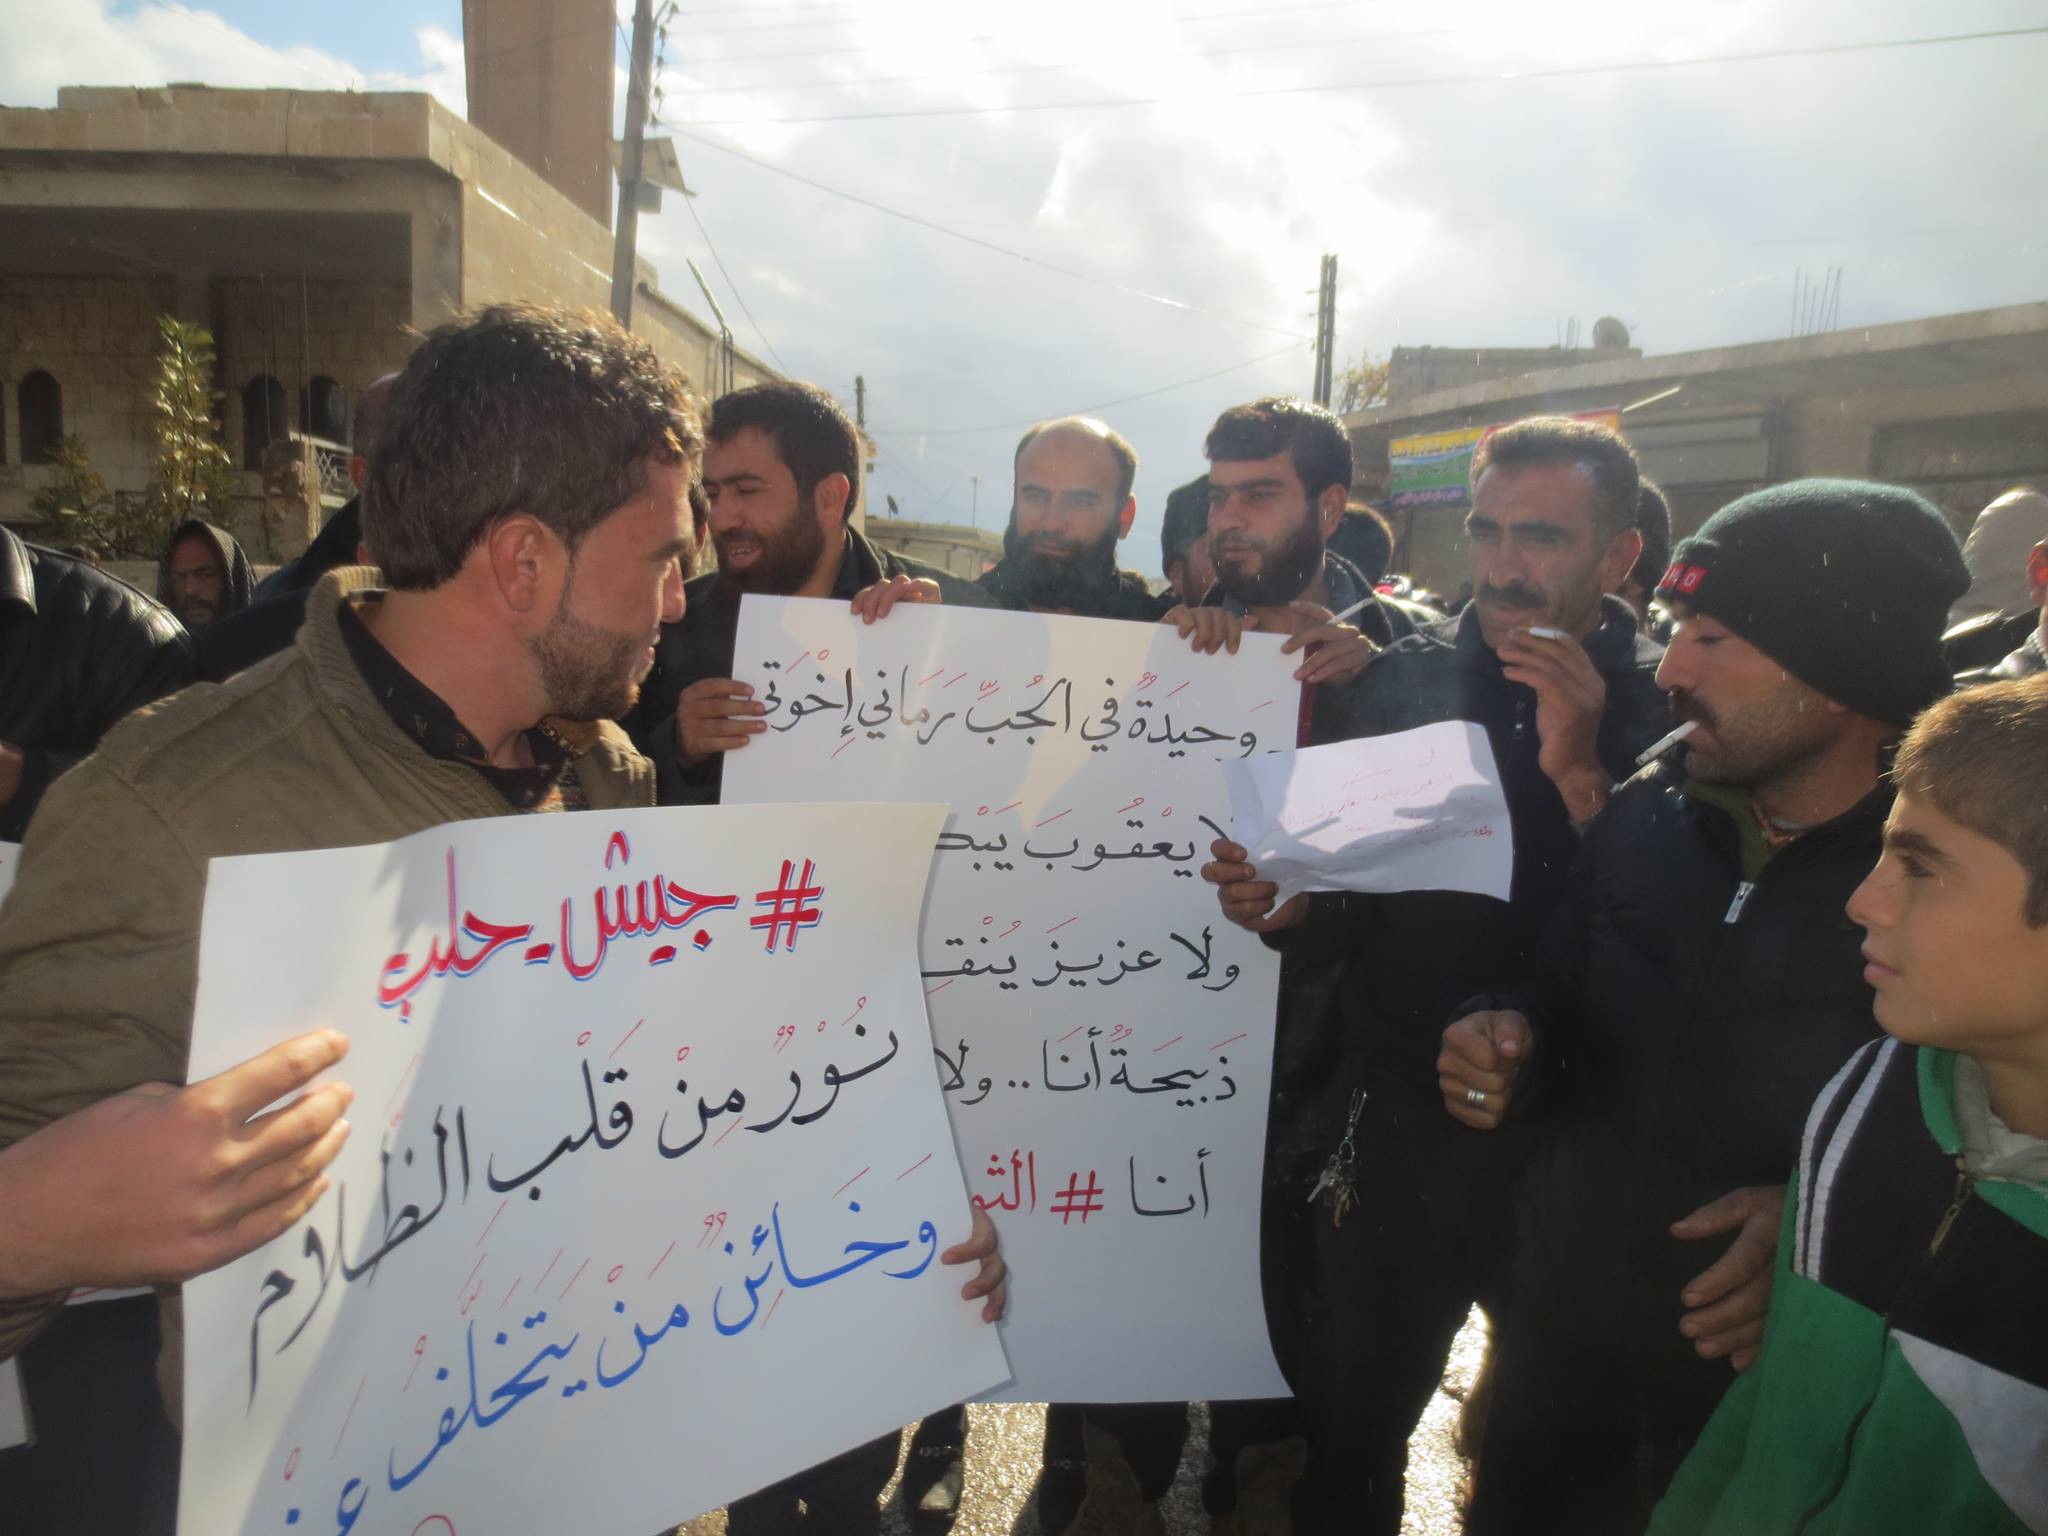 ميداني| المعارضة تتصدى في الشيخ سعيد، ومظاهرات لنصرة حلب بإدلب والغوطة الشرقية